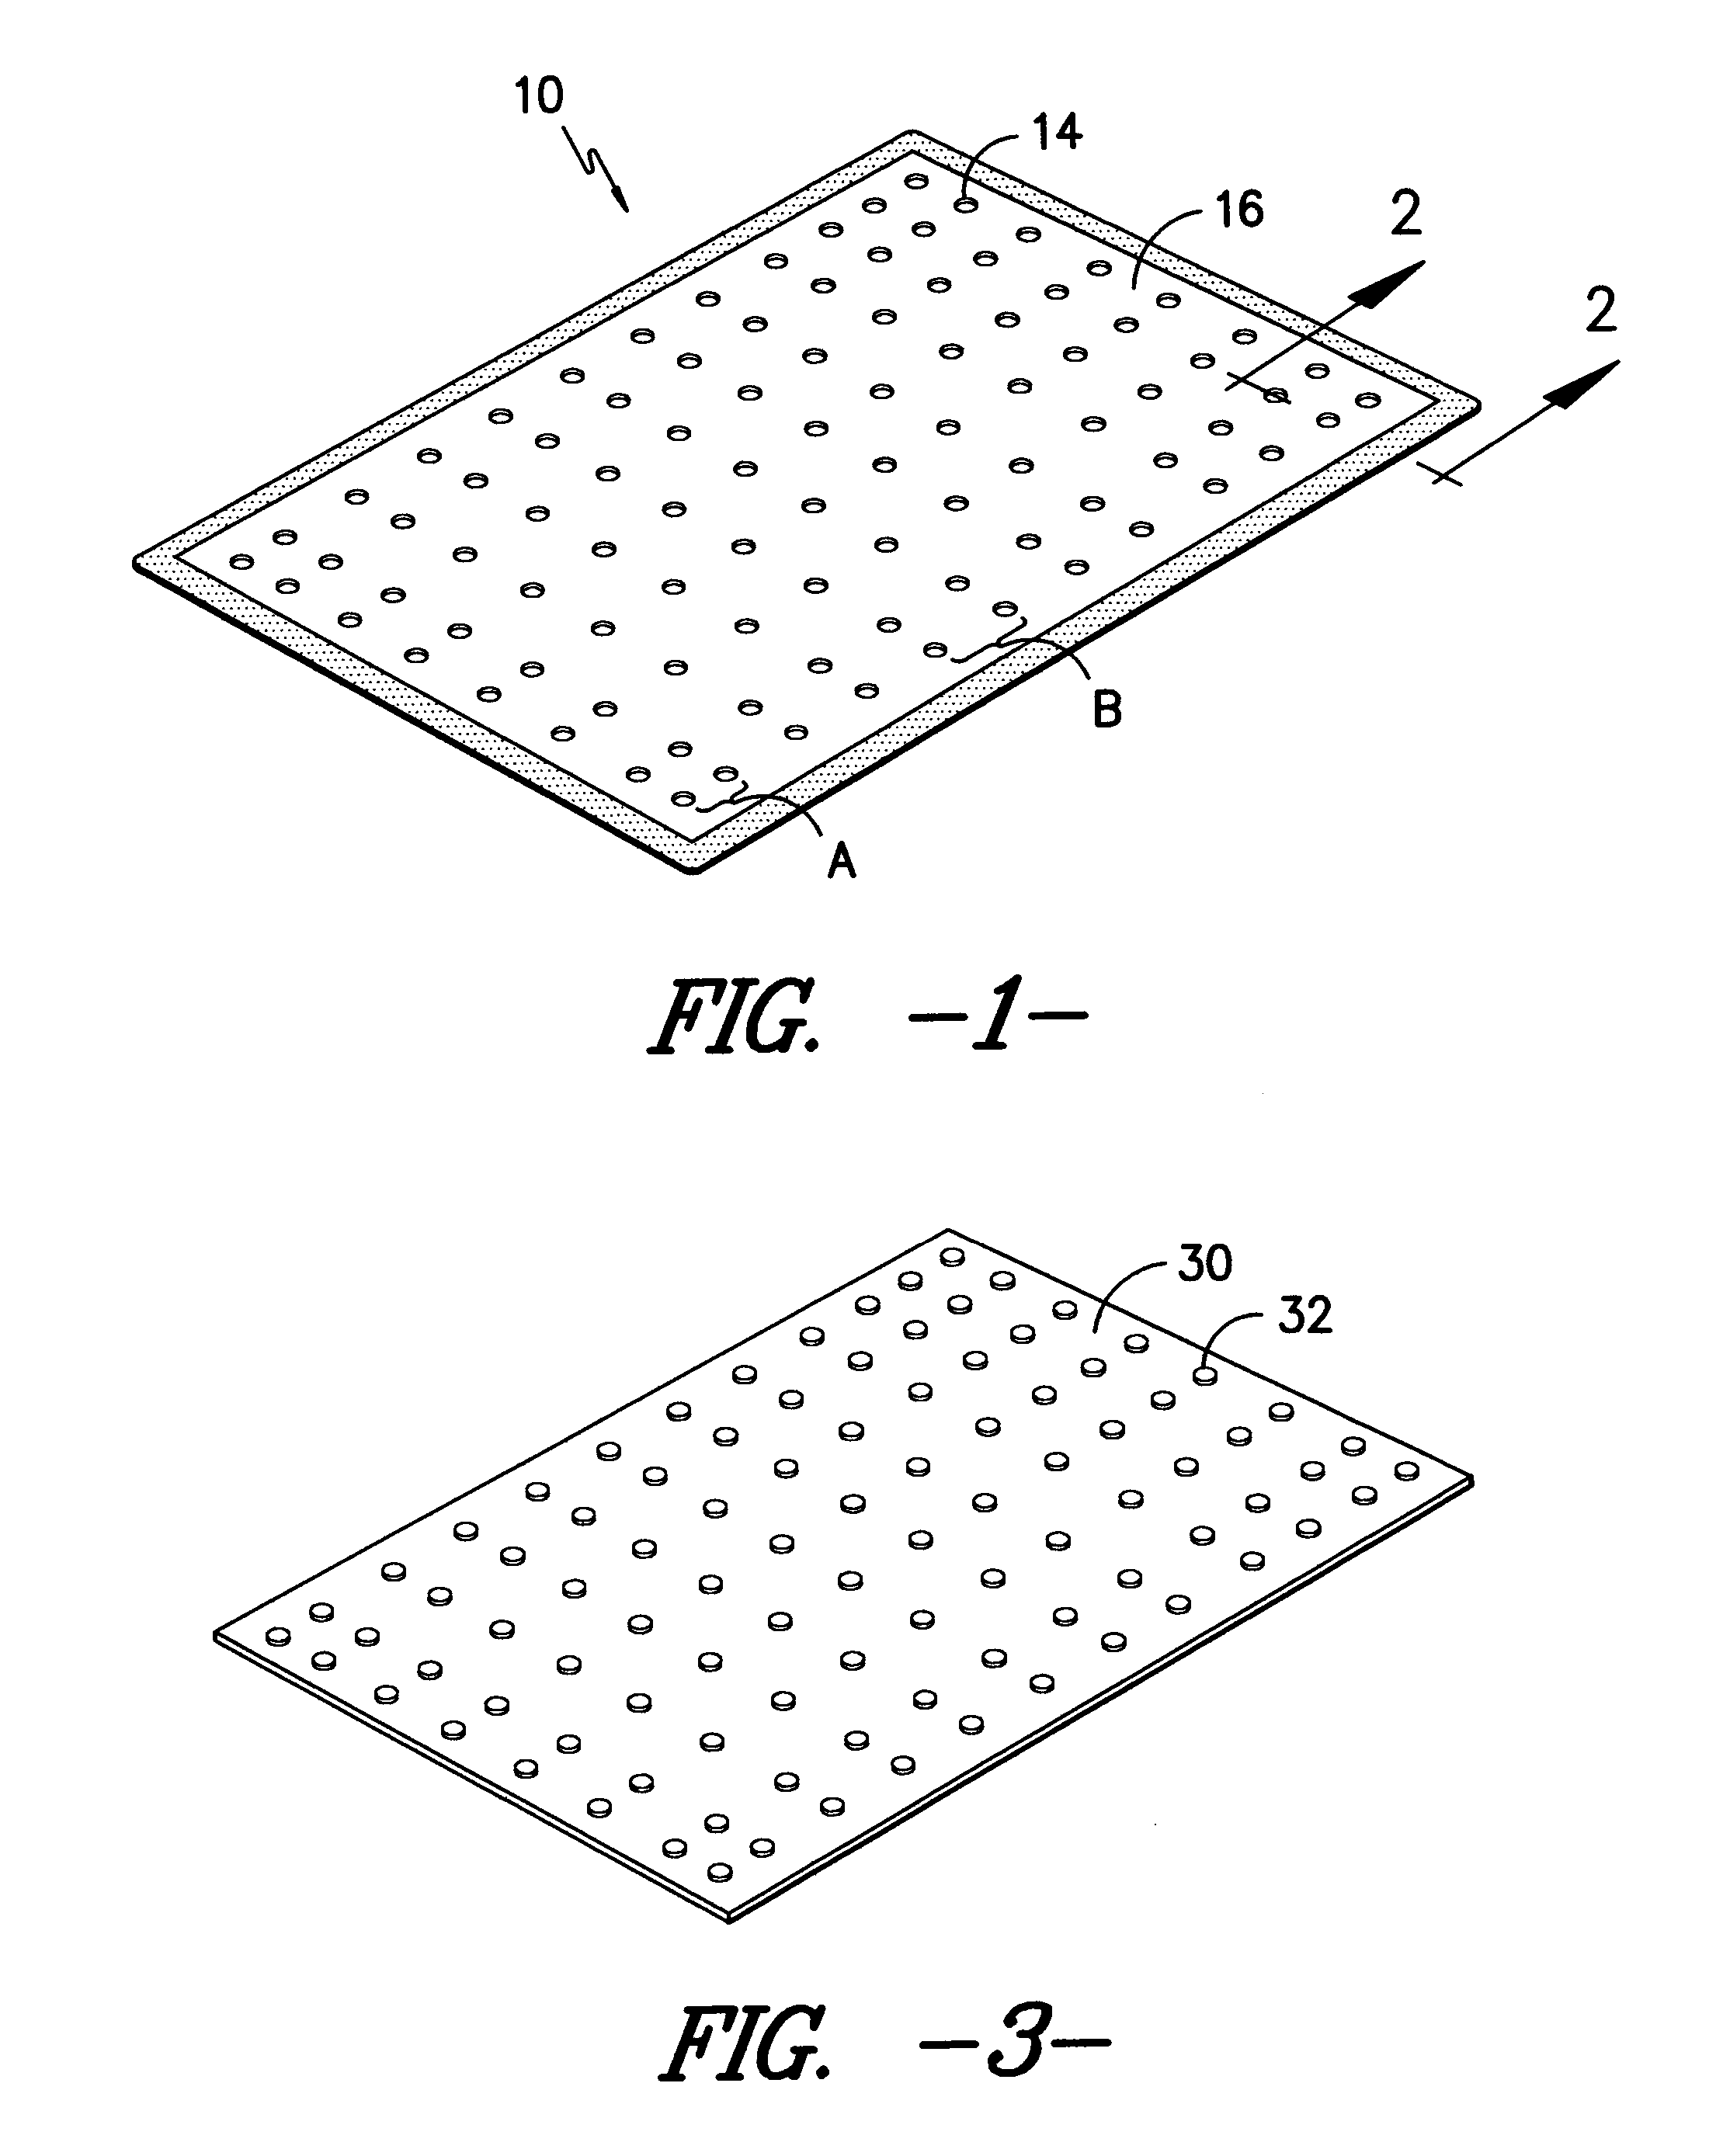 Non-migrating floor mat